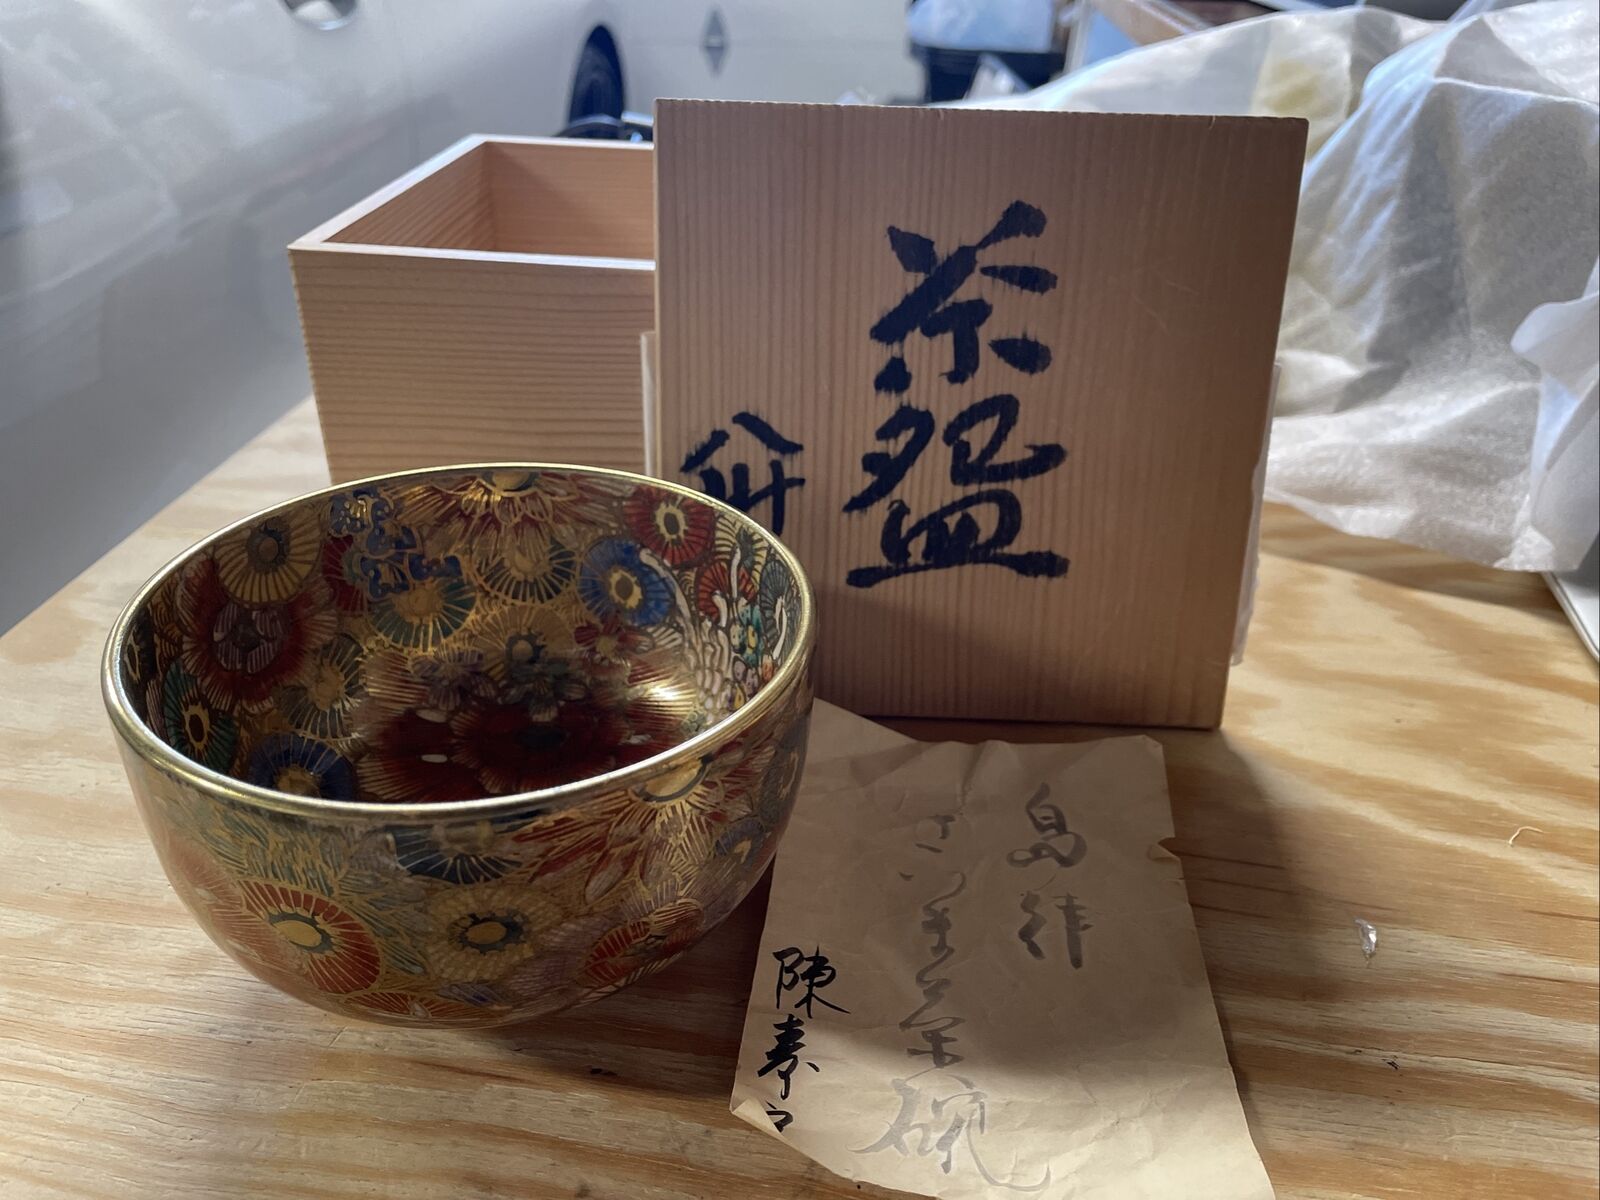 Kakuzan gold leaf Tategawa tea bowl, box, tea utensils